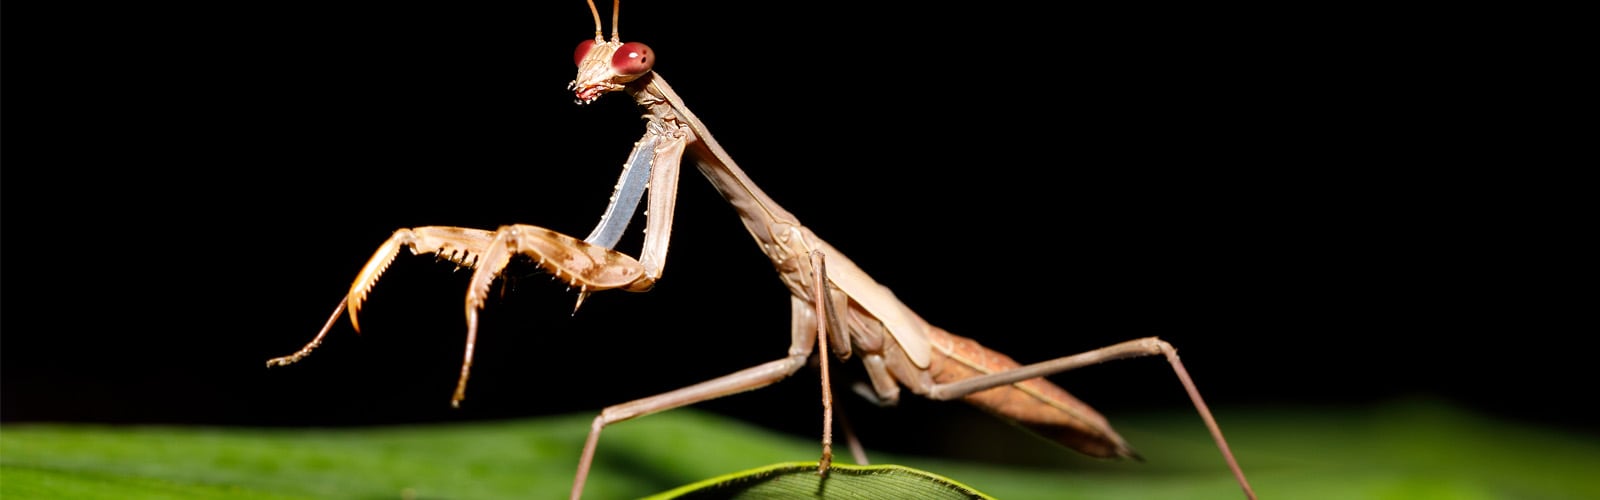 Kit básico de mantis religiosa - Mantis vivas